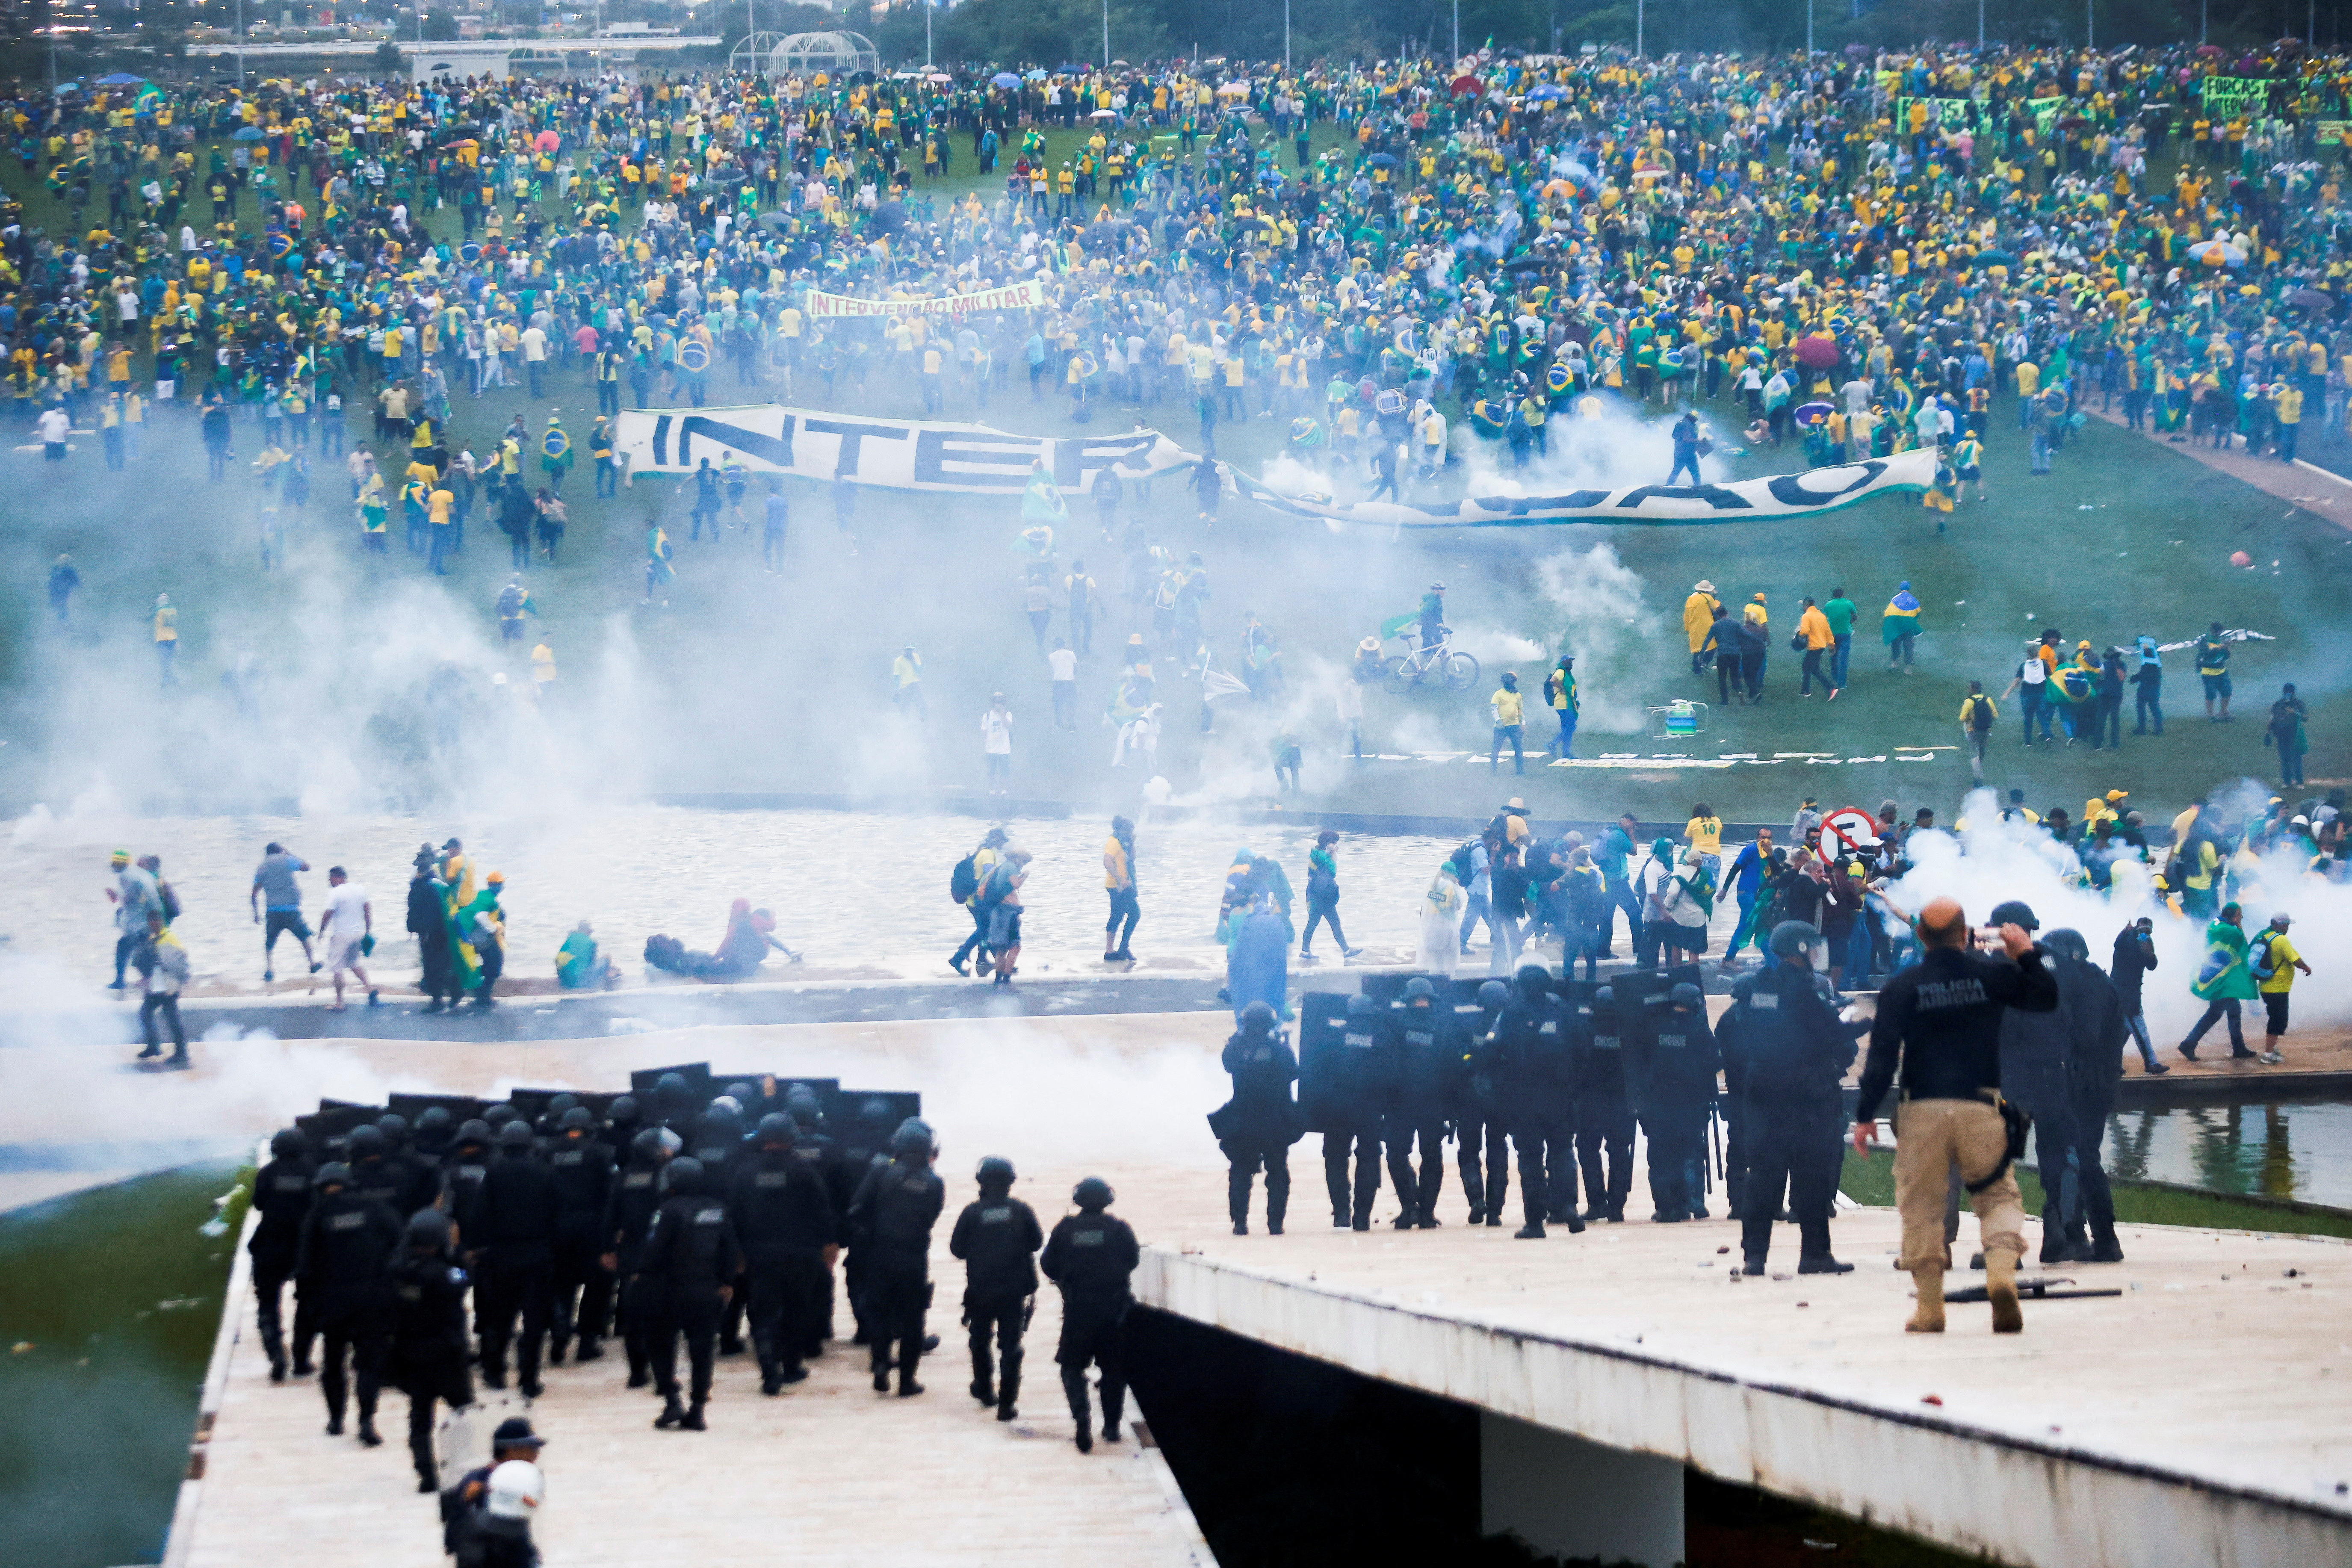 La Corte Suprema de Brasil ordenó la prisión preventiva por tiempo indefinido a 942 de los 1.406 seguidores del ex presidente Jair Bolsonaro detenidos por el intento de golpe de estado del pasado 8 de enero. (REUTERS)